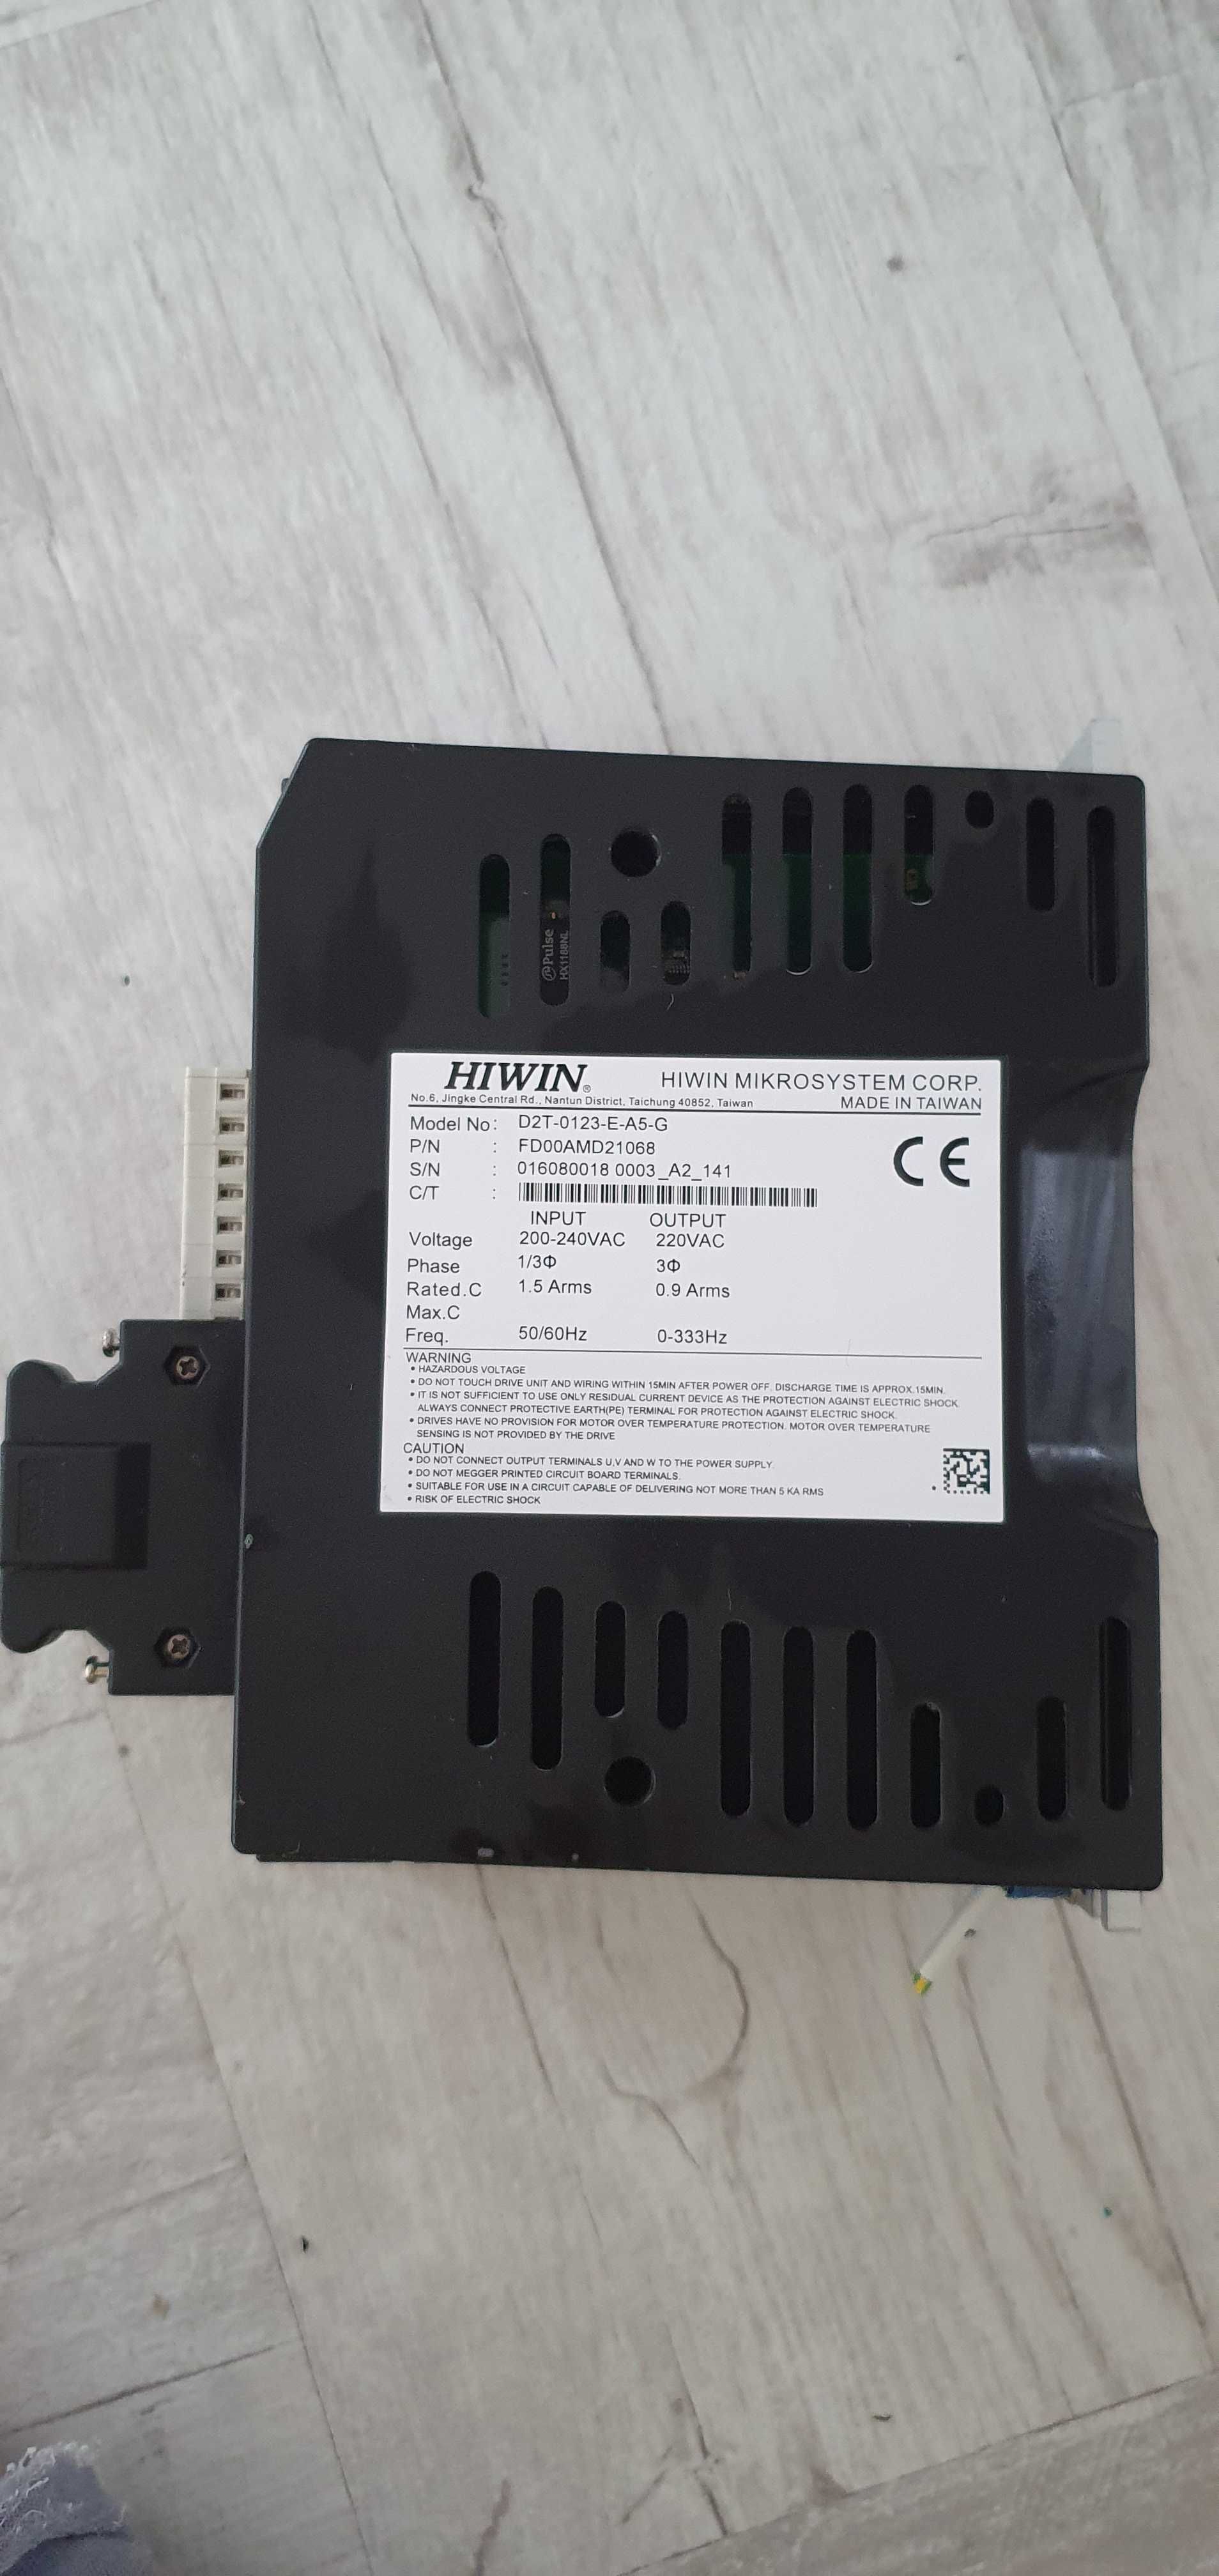 Servo Drive HIWIN Model: D2T-0123-E-A5-G